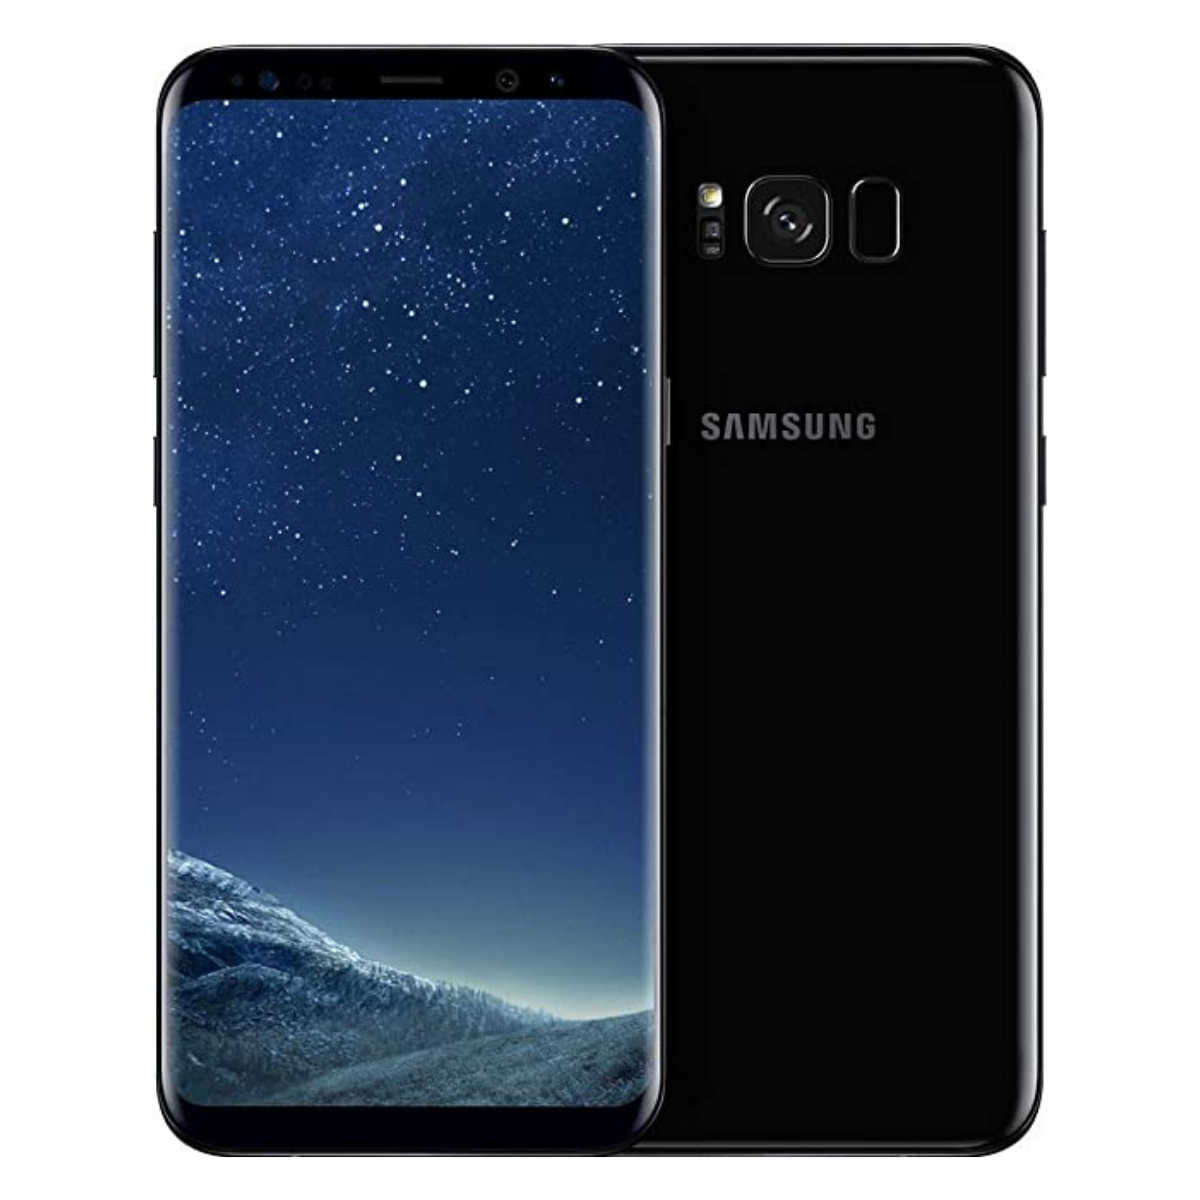 Sim Free Samsung Galaxy S8 Plus 64GB Unlocked Mobile Phone - Black